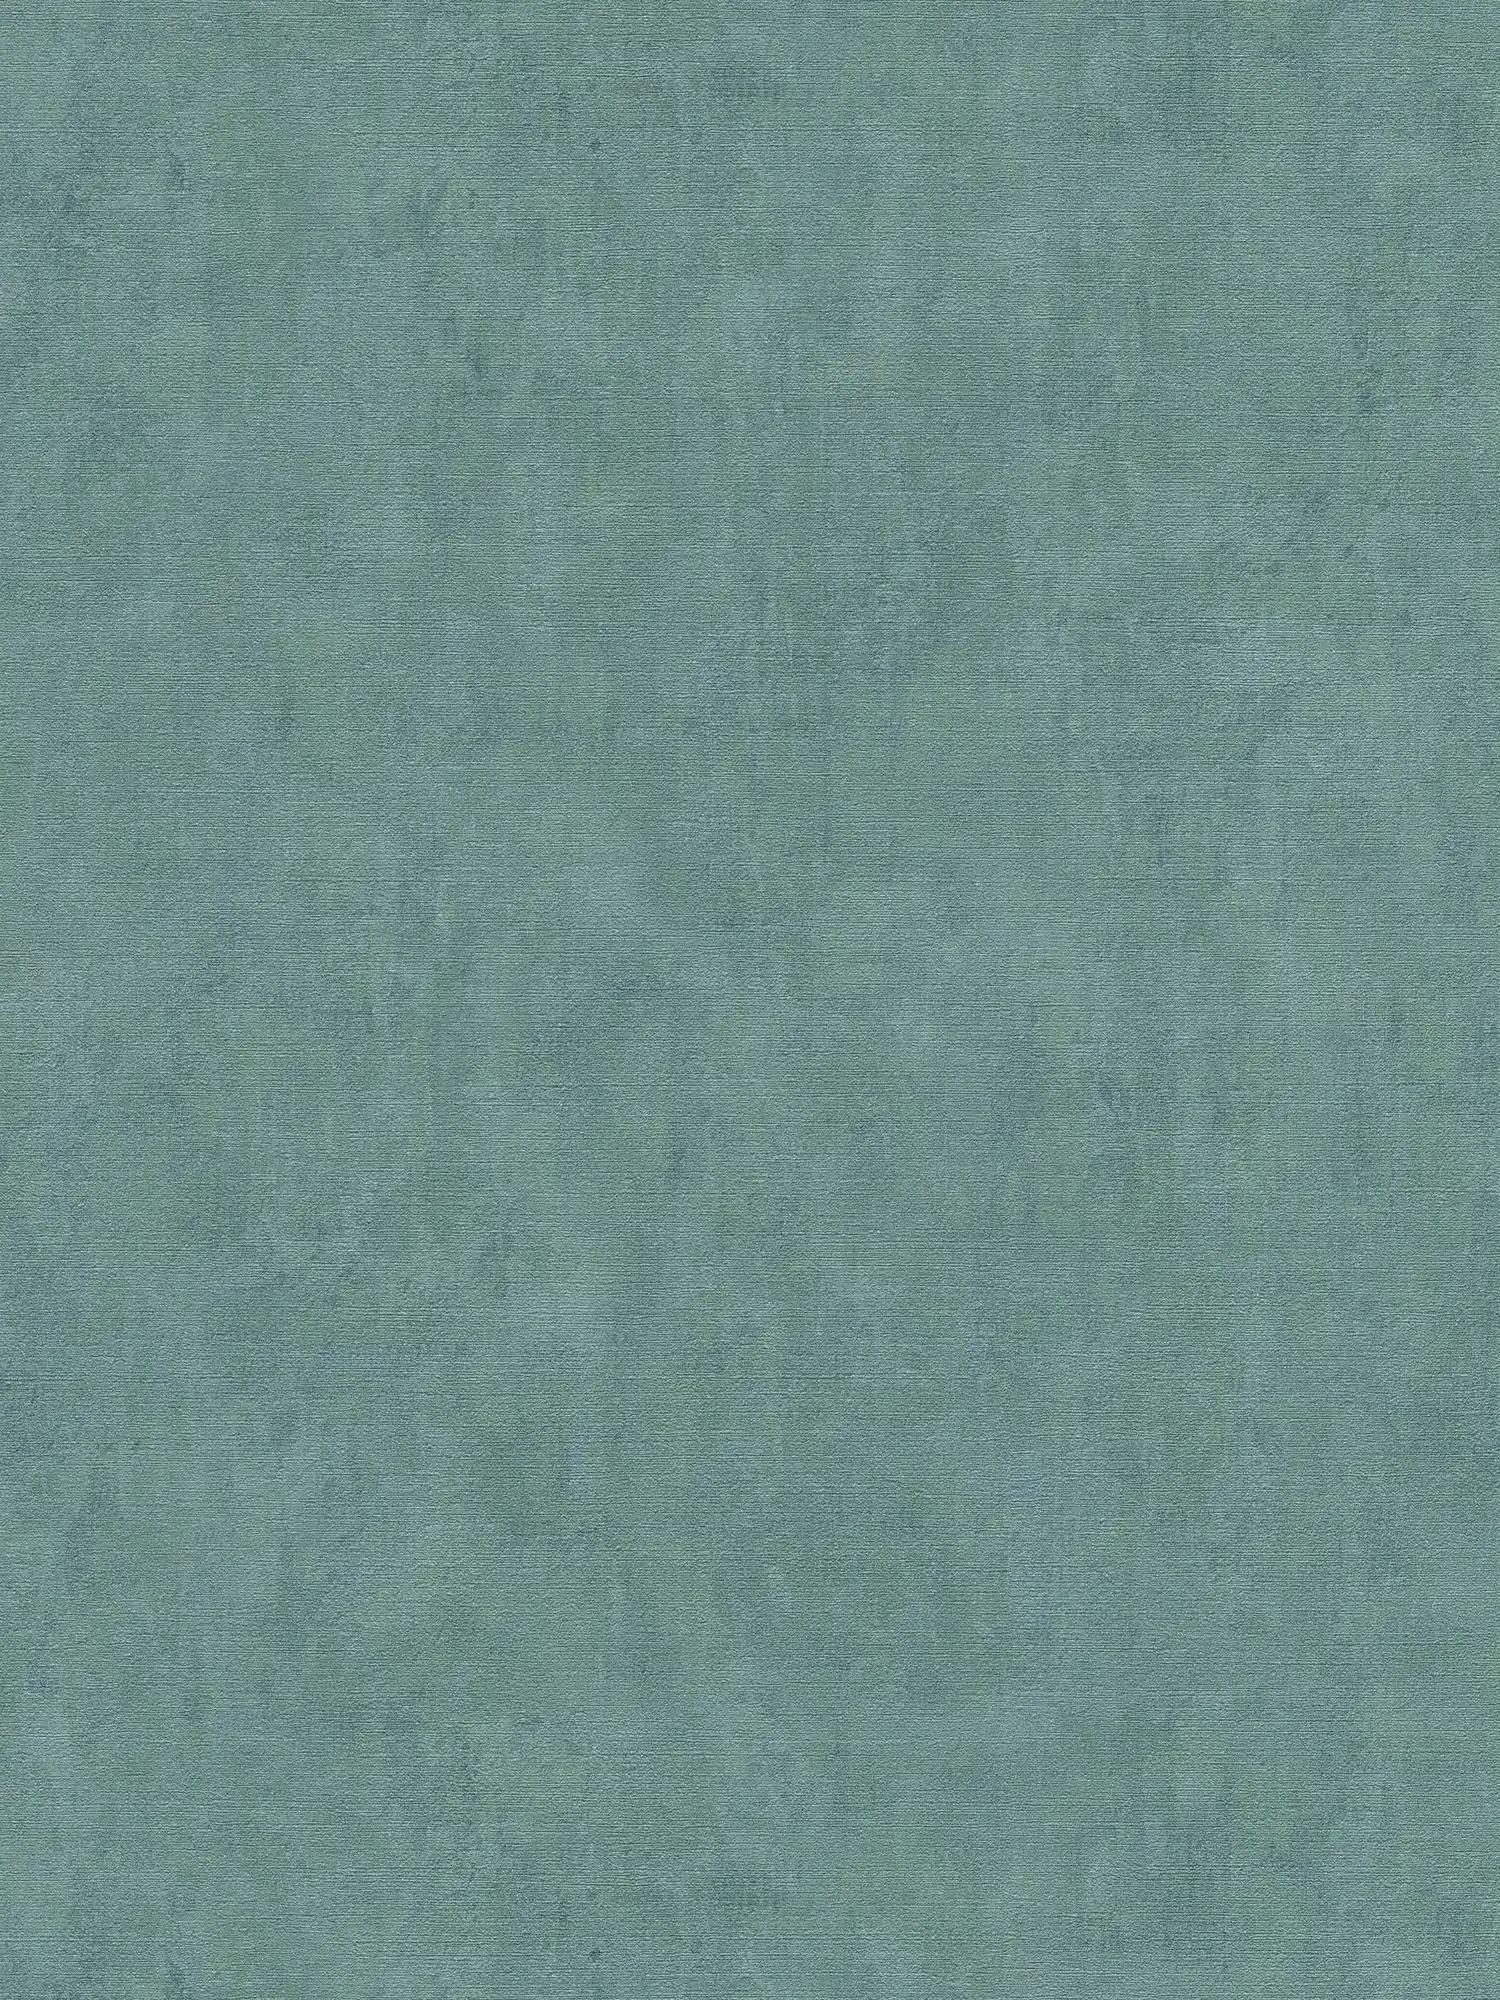 Papier peint uni pétrole chiné accents verts - bleu, vert
